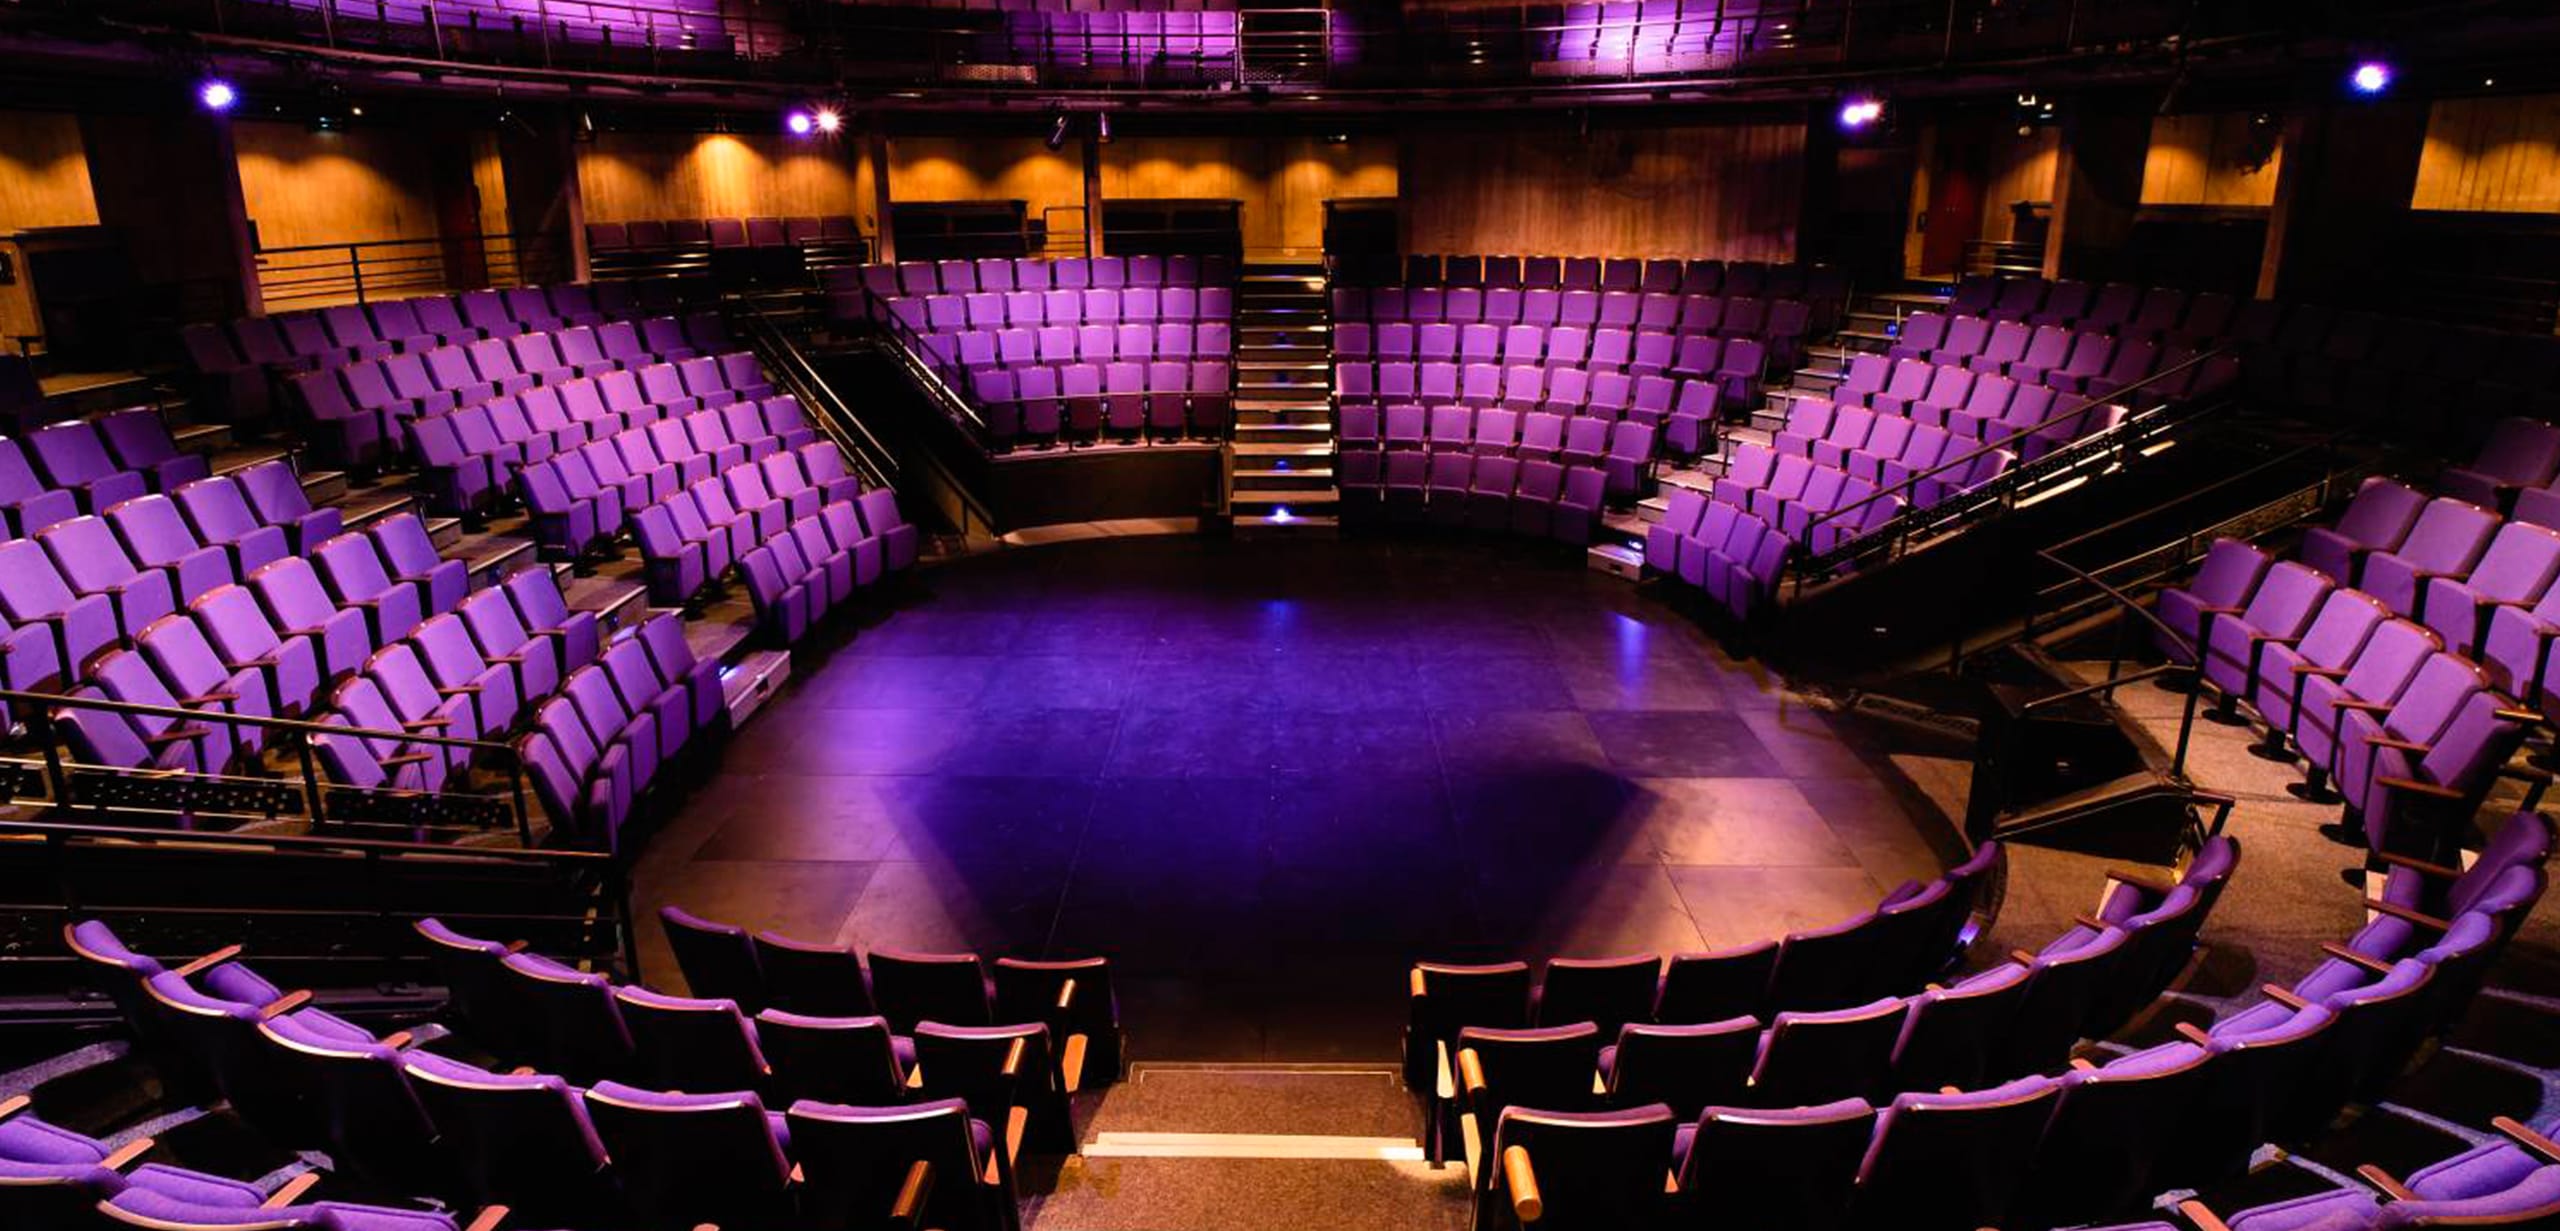 A large auditorium with purple auditorium seating